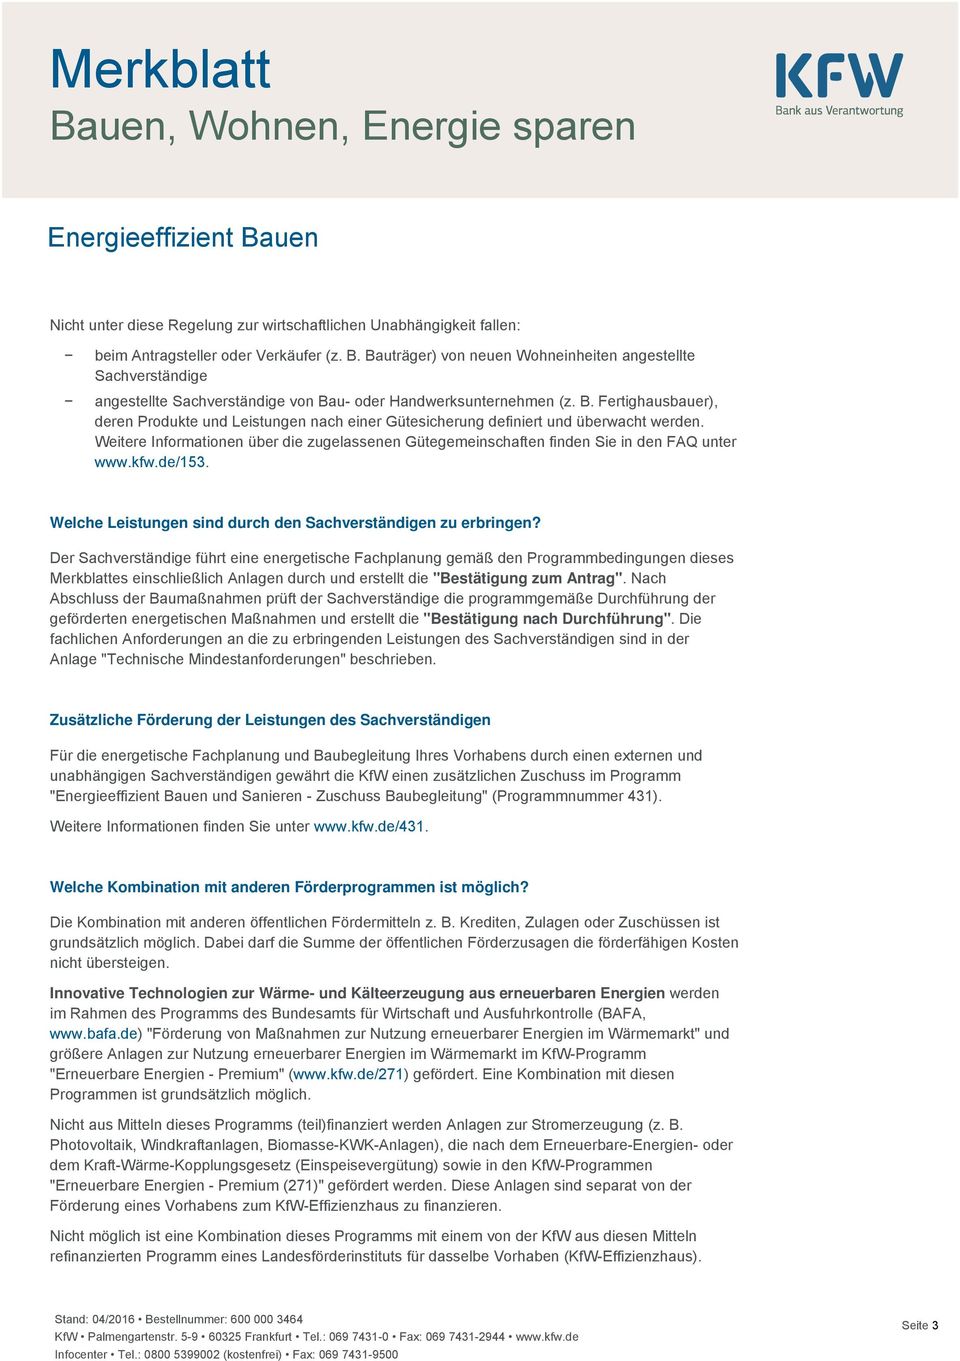 Weitere Informationen über die zugelassenen Gütegemeinschaften finden Sie in den FAQ unter www.kfw.de/153. Welche Leistungen sind durch den Sachverständigen zu erbringen?